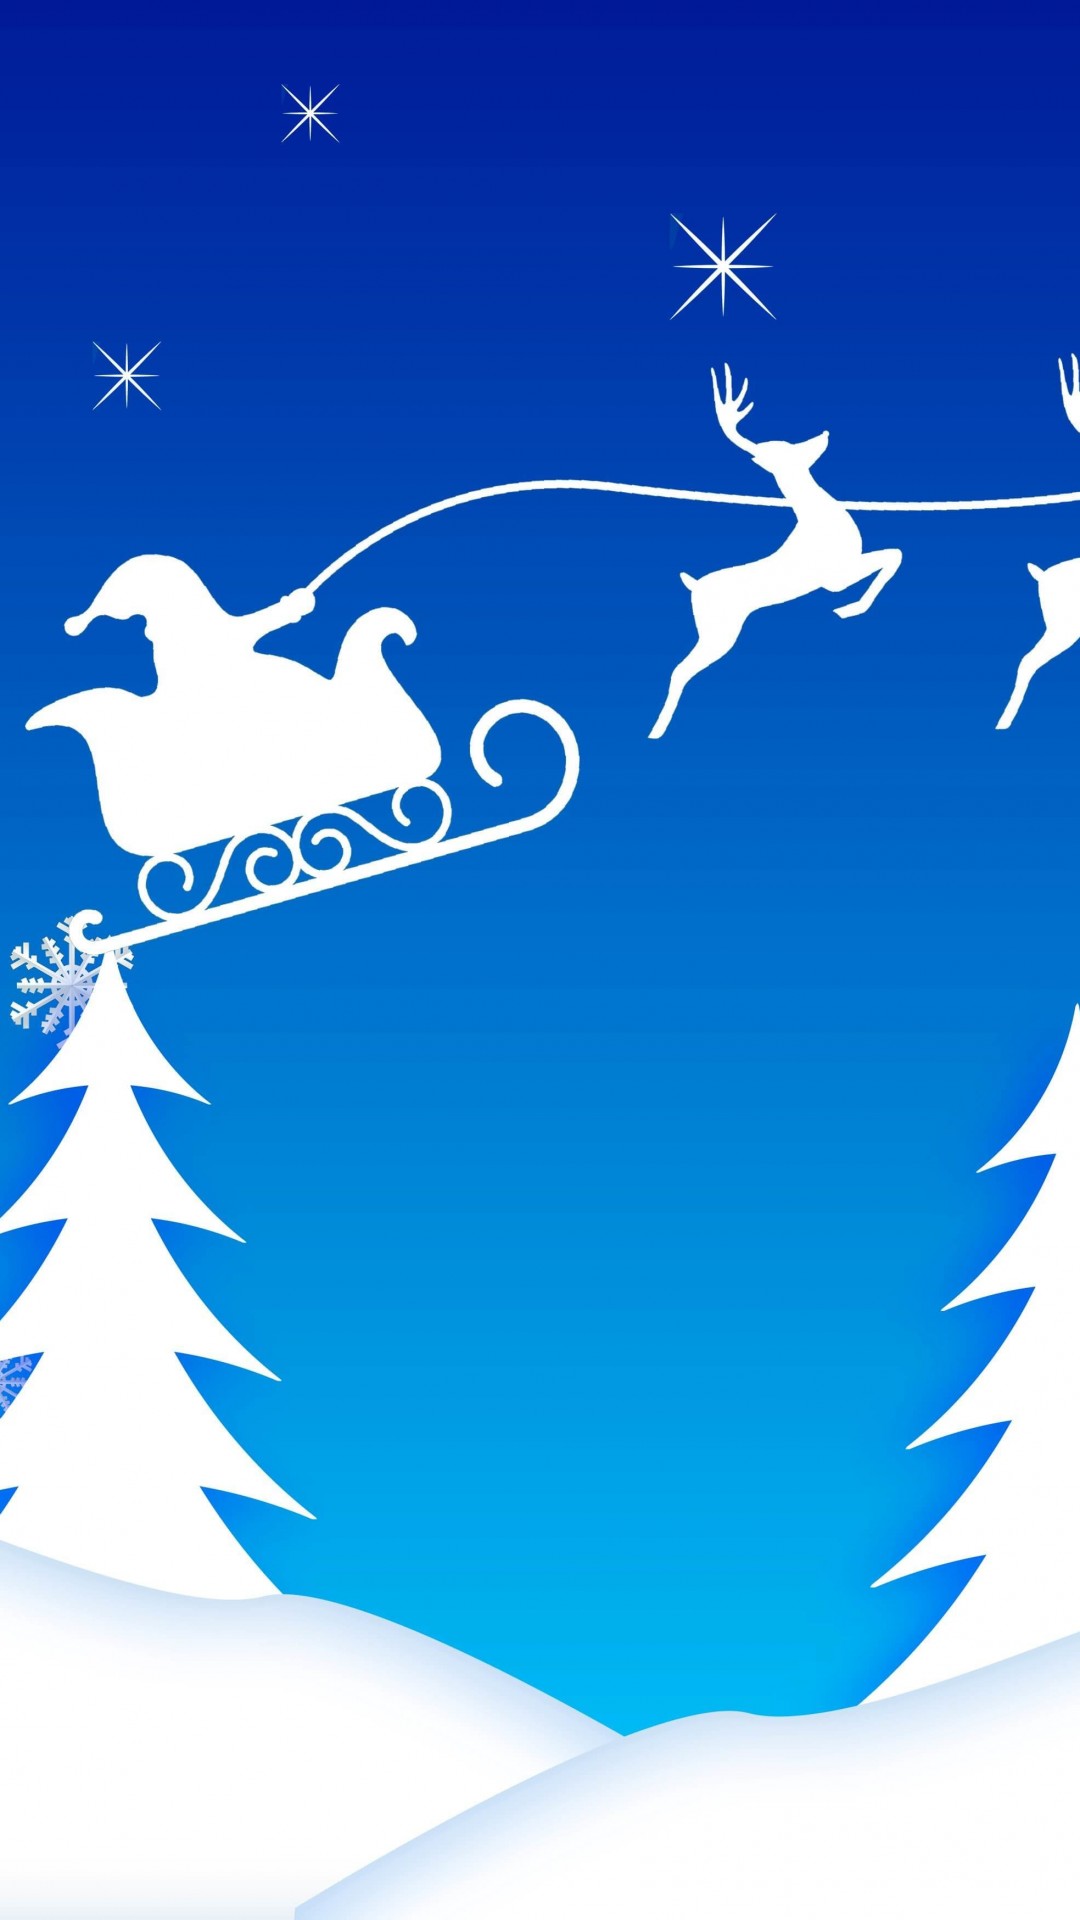 Santa’s Sleigh Illustration Wallpaper for Google Nexus 5X